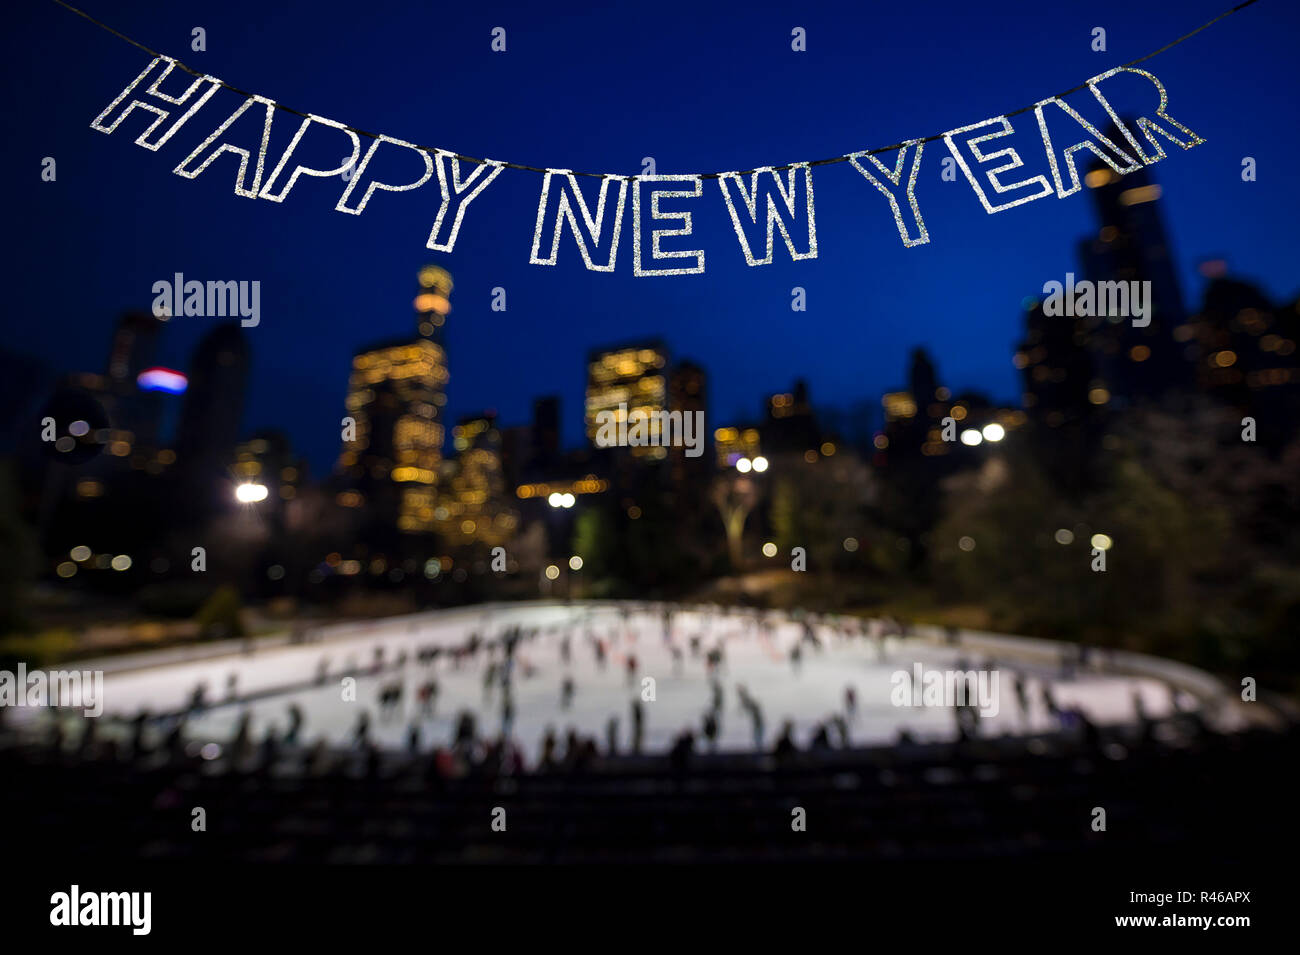 Felice Anno Nuovo messaggio in shiny bunting appeso nel cielo invernale al di sopra di un occupato il pattinaggio su ghiaccio circondato da scintillanti luci della città Foto Stock